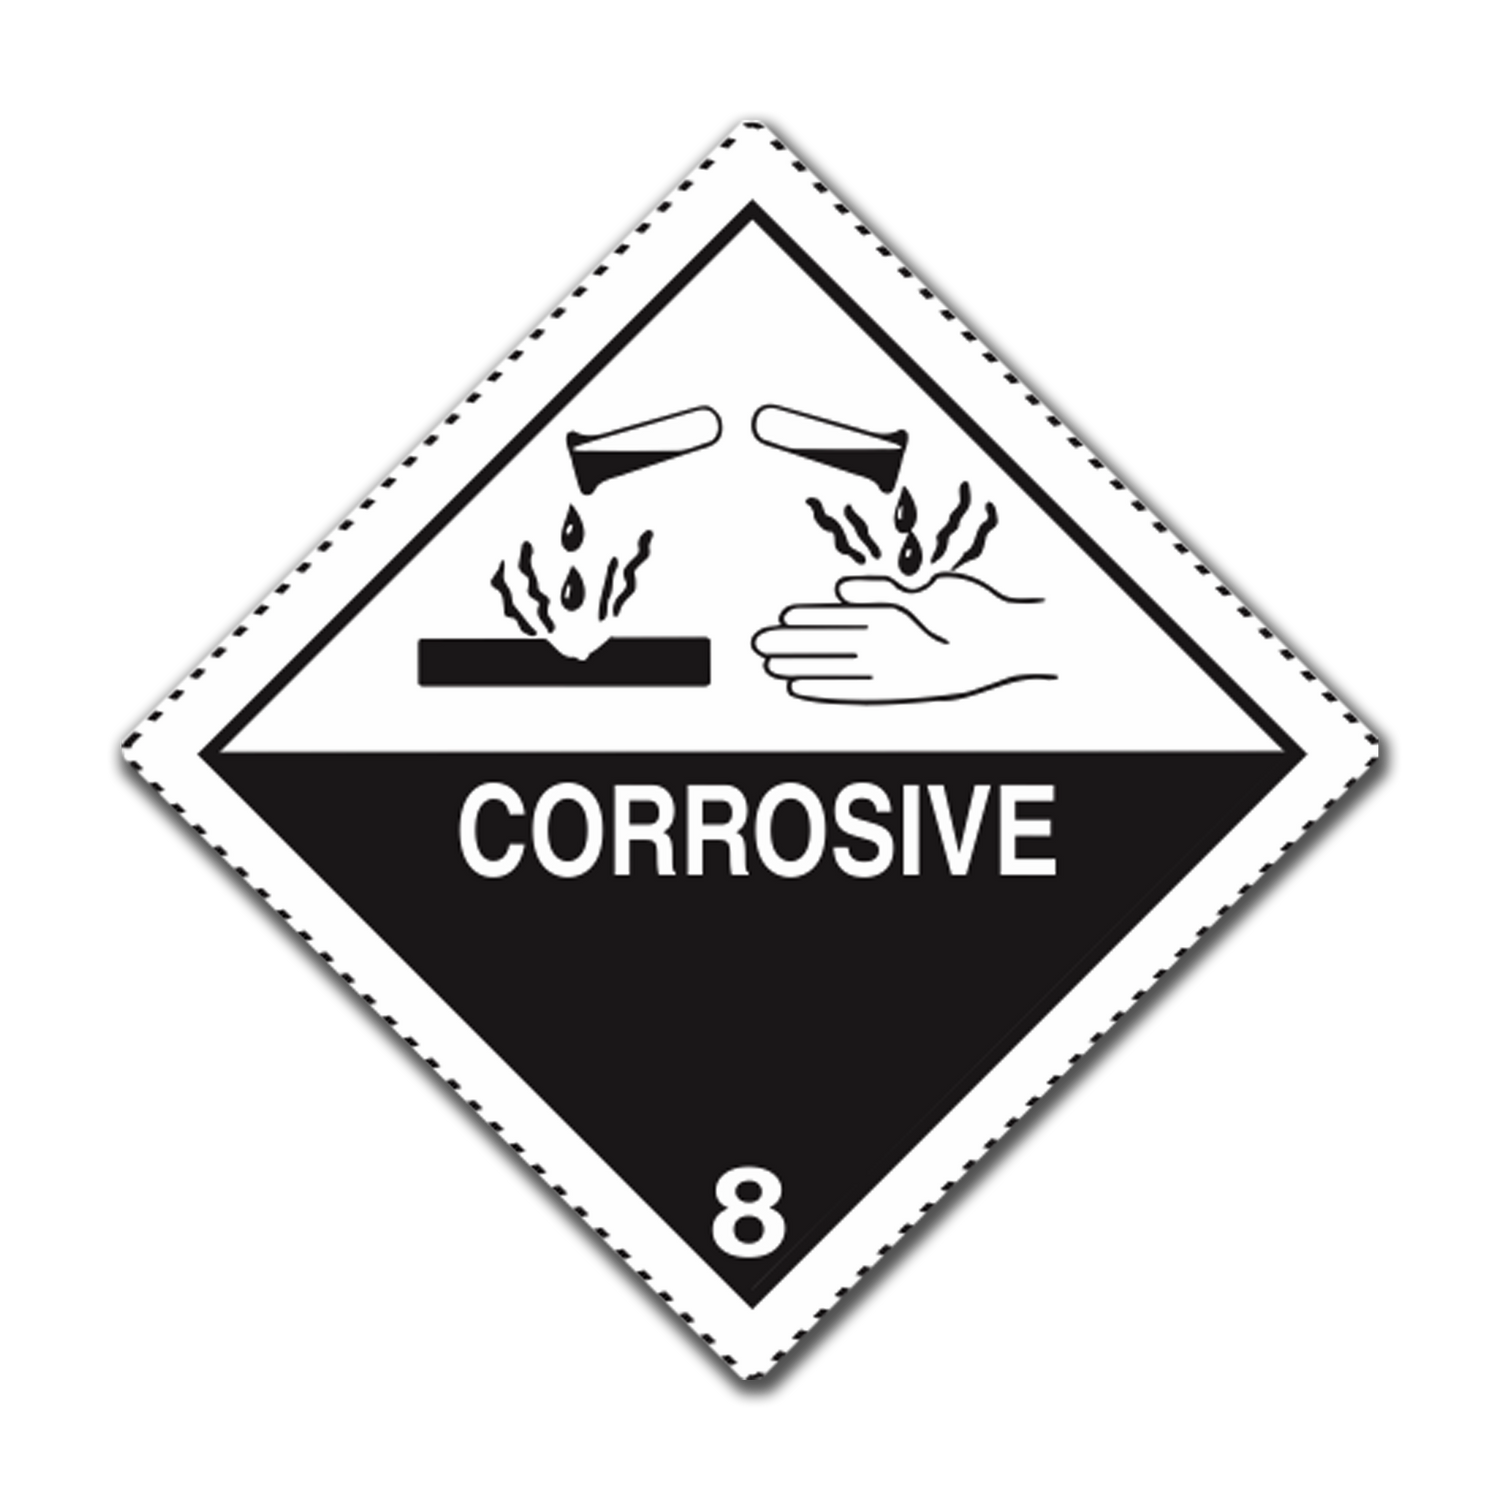 Class 8 - Corrosive substances, UN Dangerous Goods